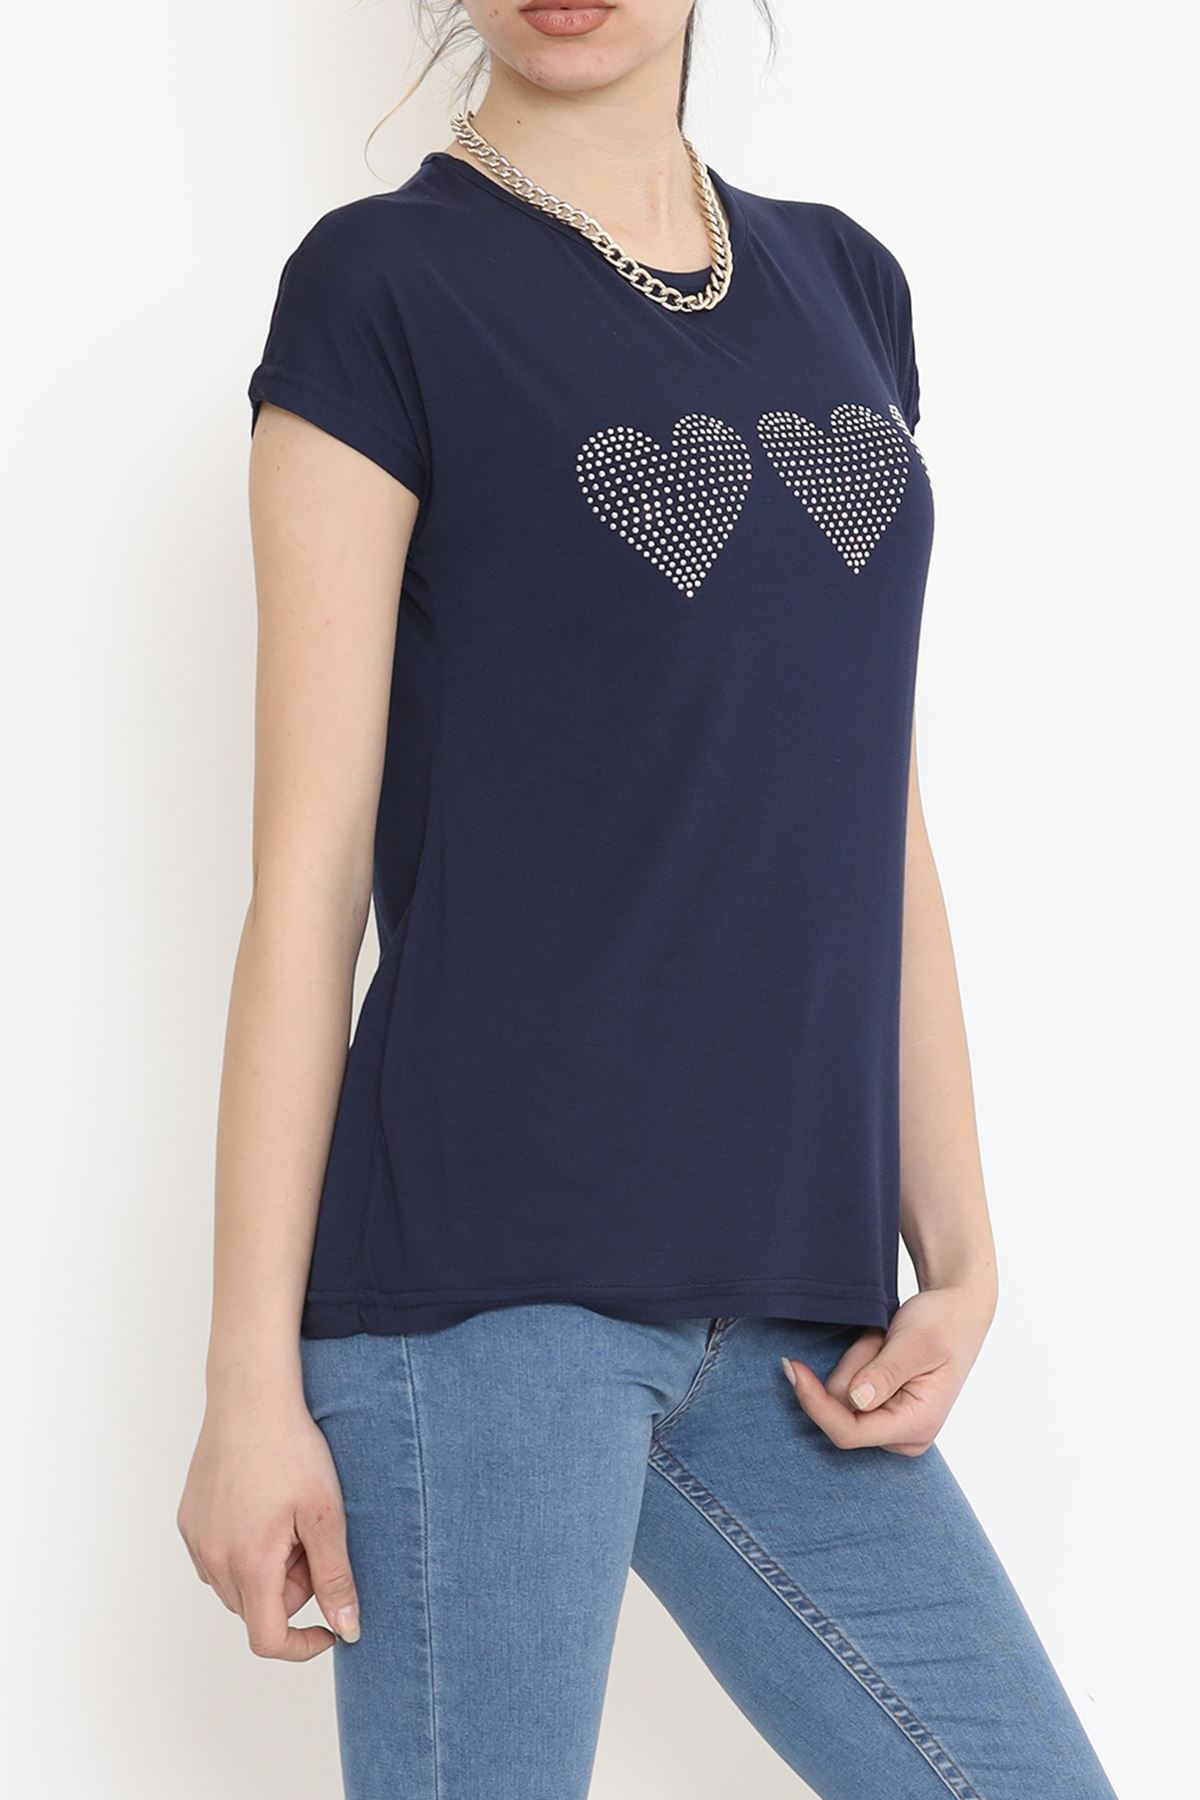 Kalp İşlemeli Bluz Lacivert - 17128.599.